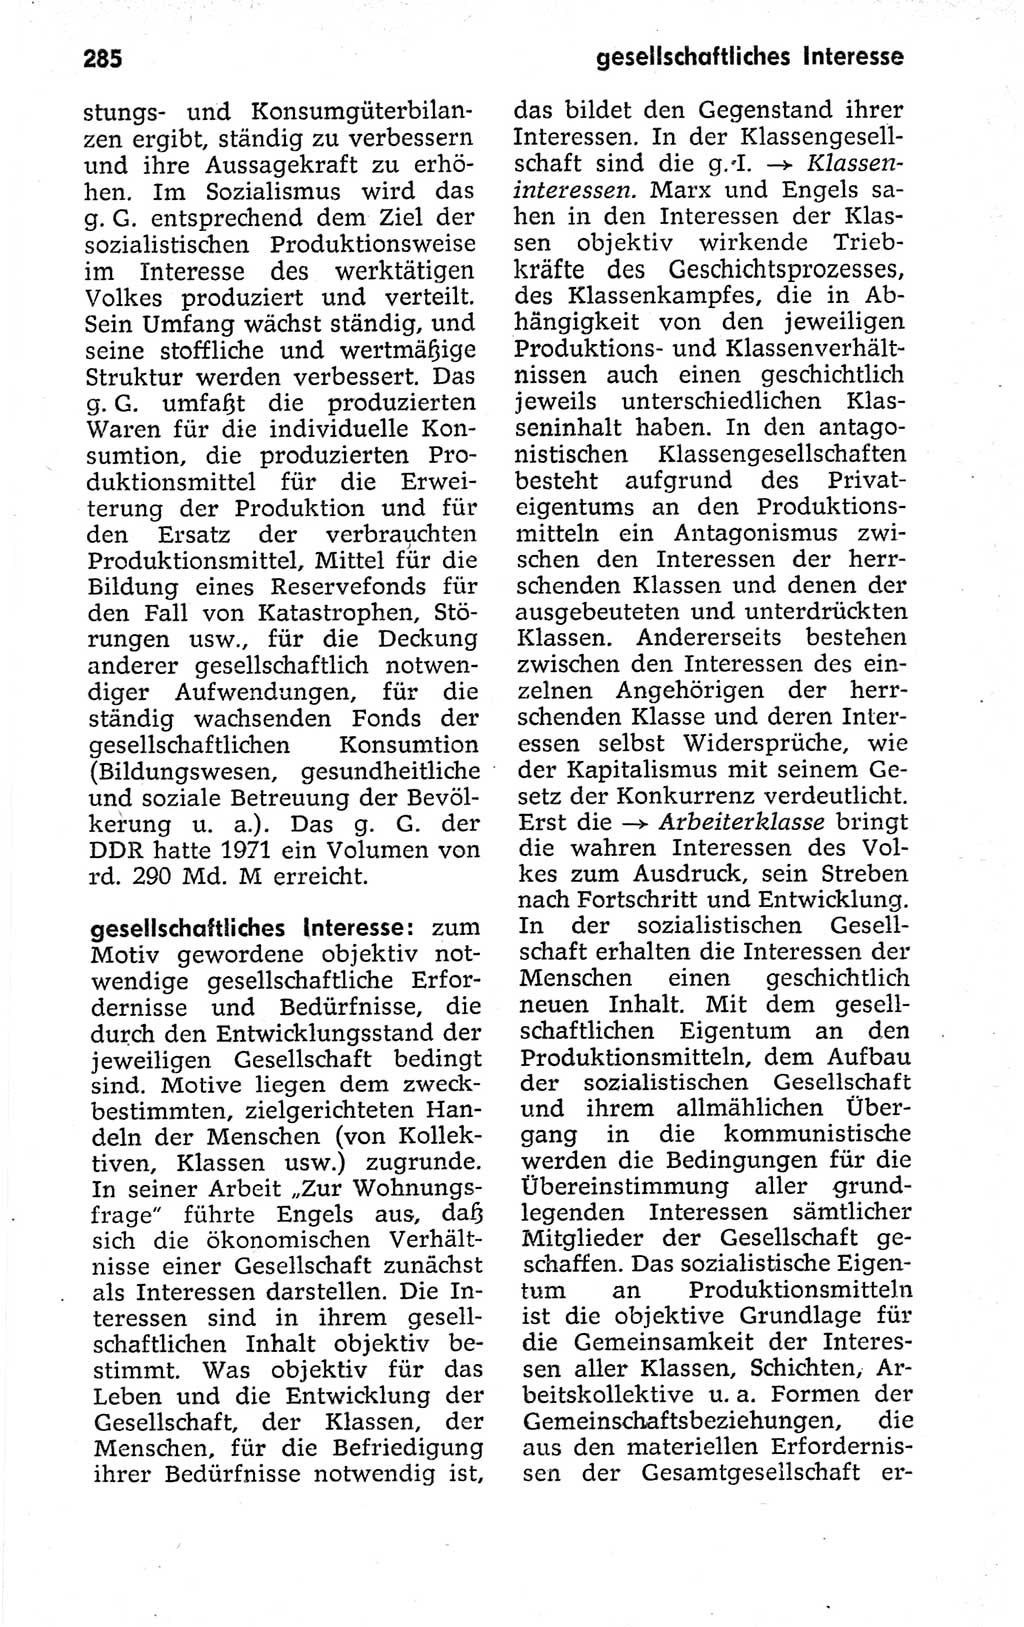 Kleines politisches Wörterbuch [Deutsche Demokratische Republik (DDR)] 1973, Seite 285 (Kl. pol. Wb. DDR 1973, S. 285)